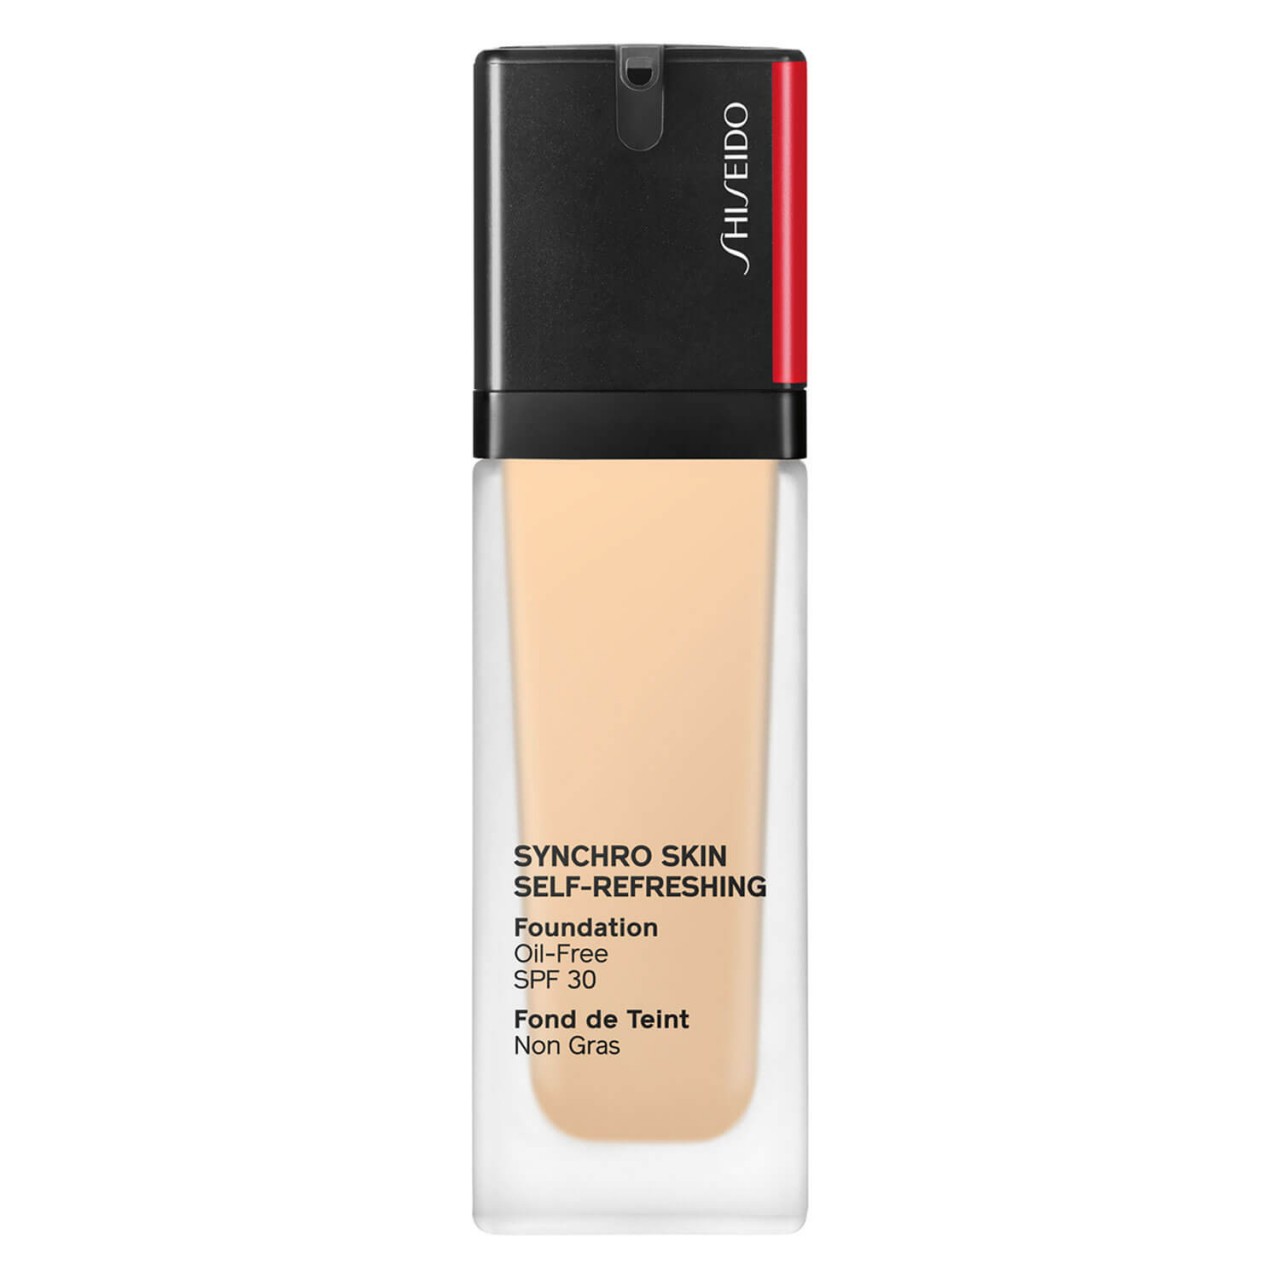 Synchro Skin Self-Refreshing - Foundation SPF 30 Birch 210 von Shiseido